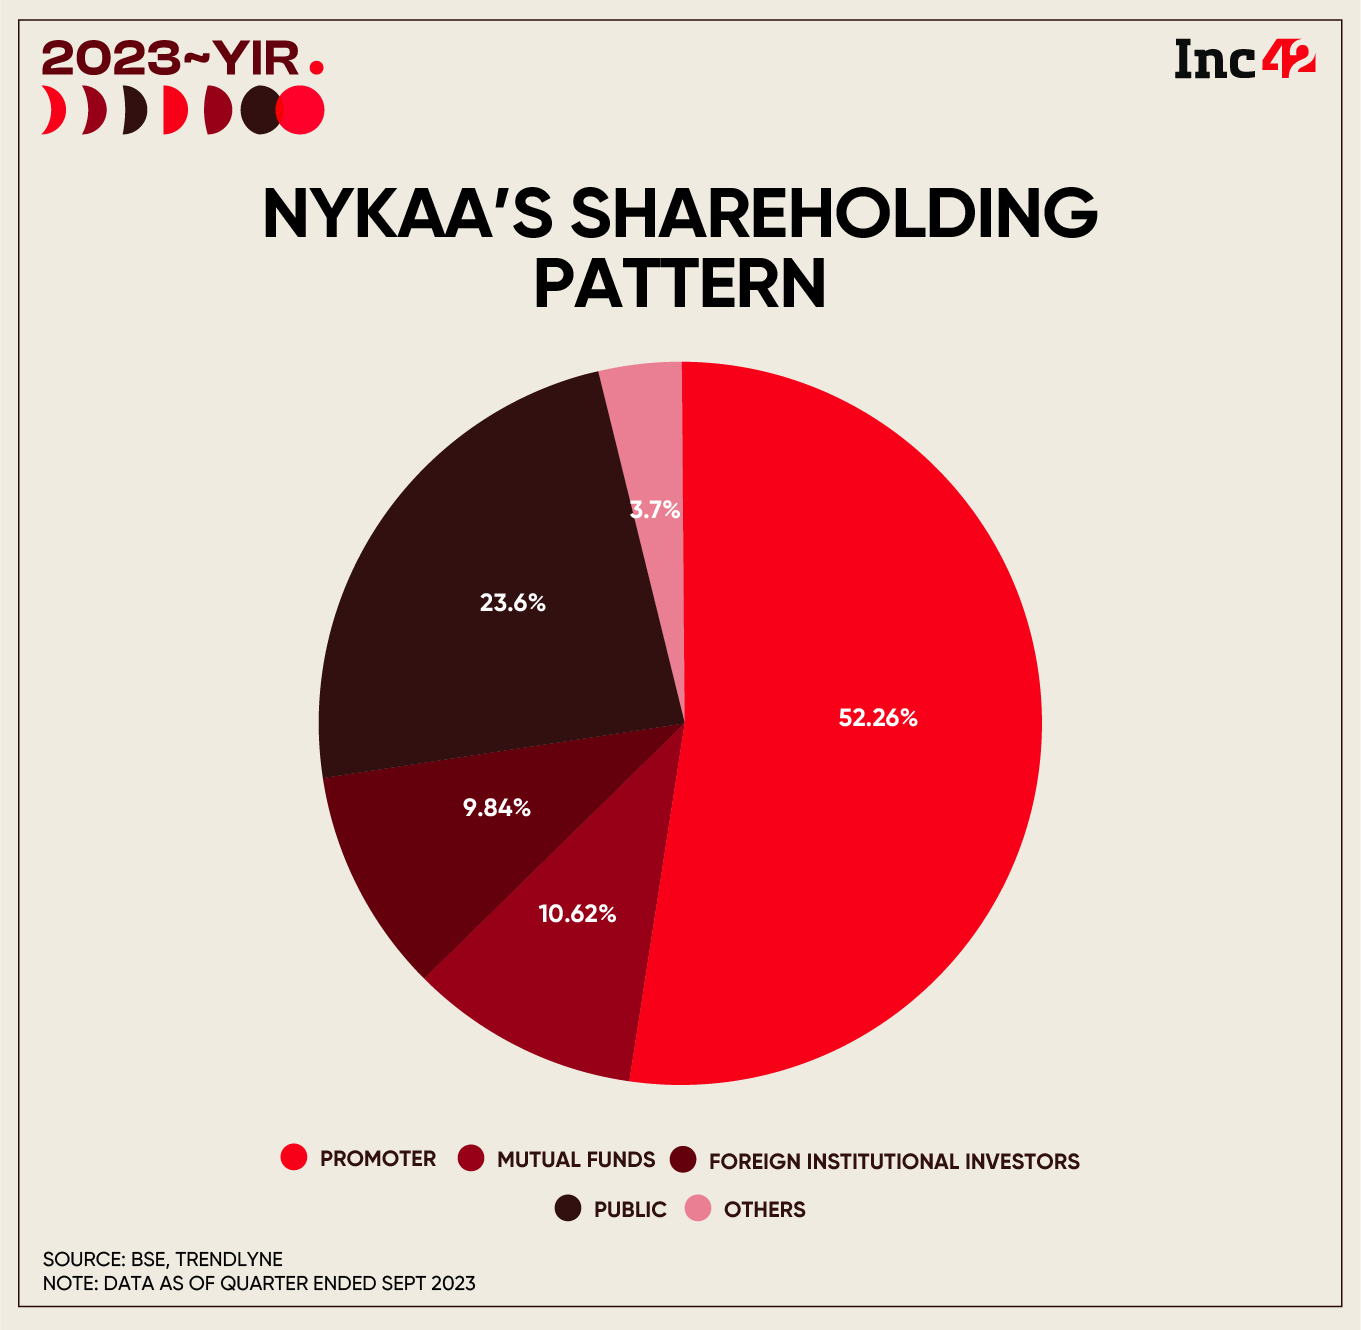 Nykaa's shareholding